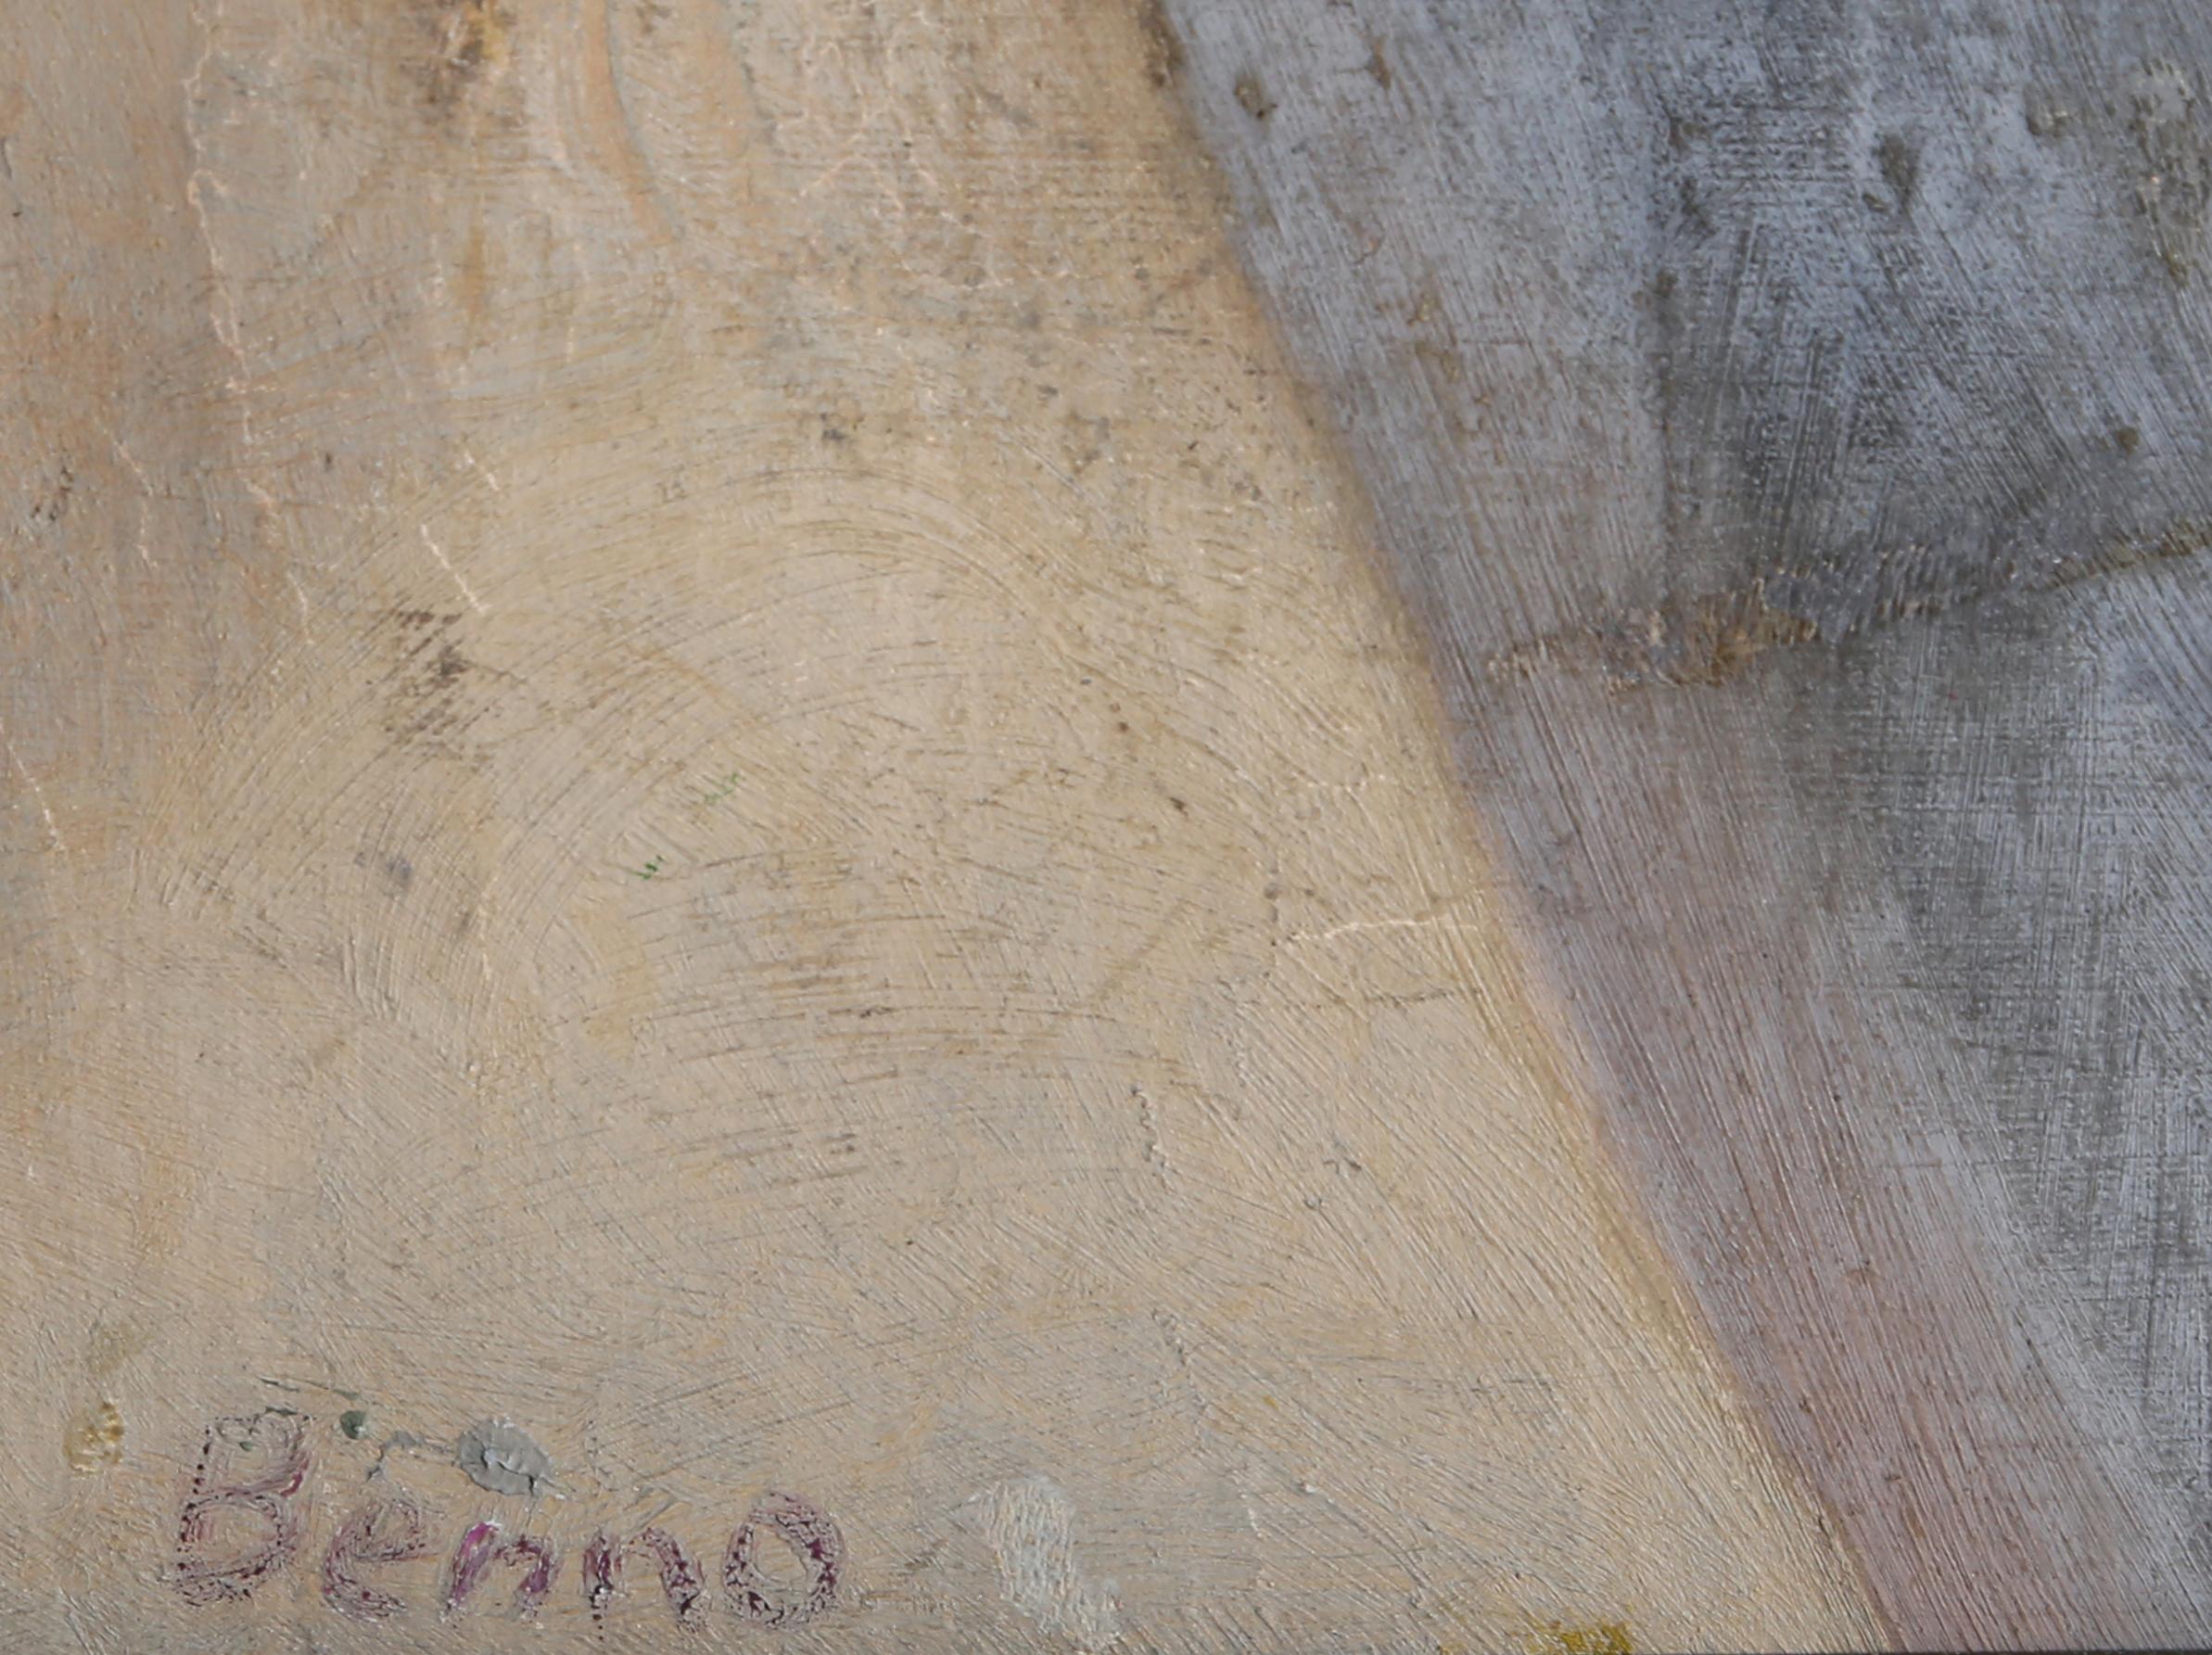 Grauzone
Benjamin Benno, Amerikaner (1901-1980)
Datum: ca. 1960
Öl auf Jute, signiert
Größe: 18 x 15 Zoll (45,72 x 38,1 cm)
Rahmengröße: 23,5 x 20 Zoll